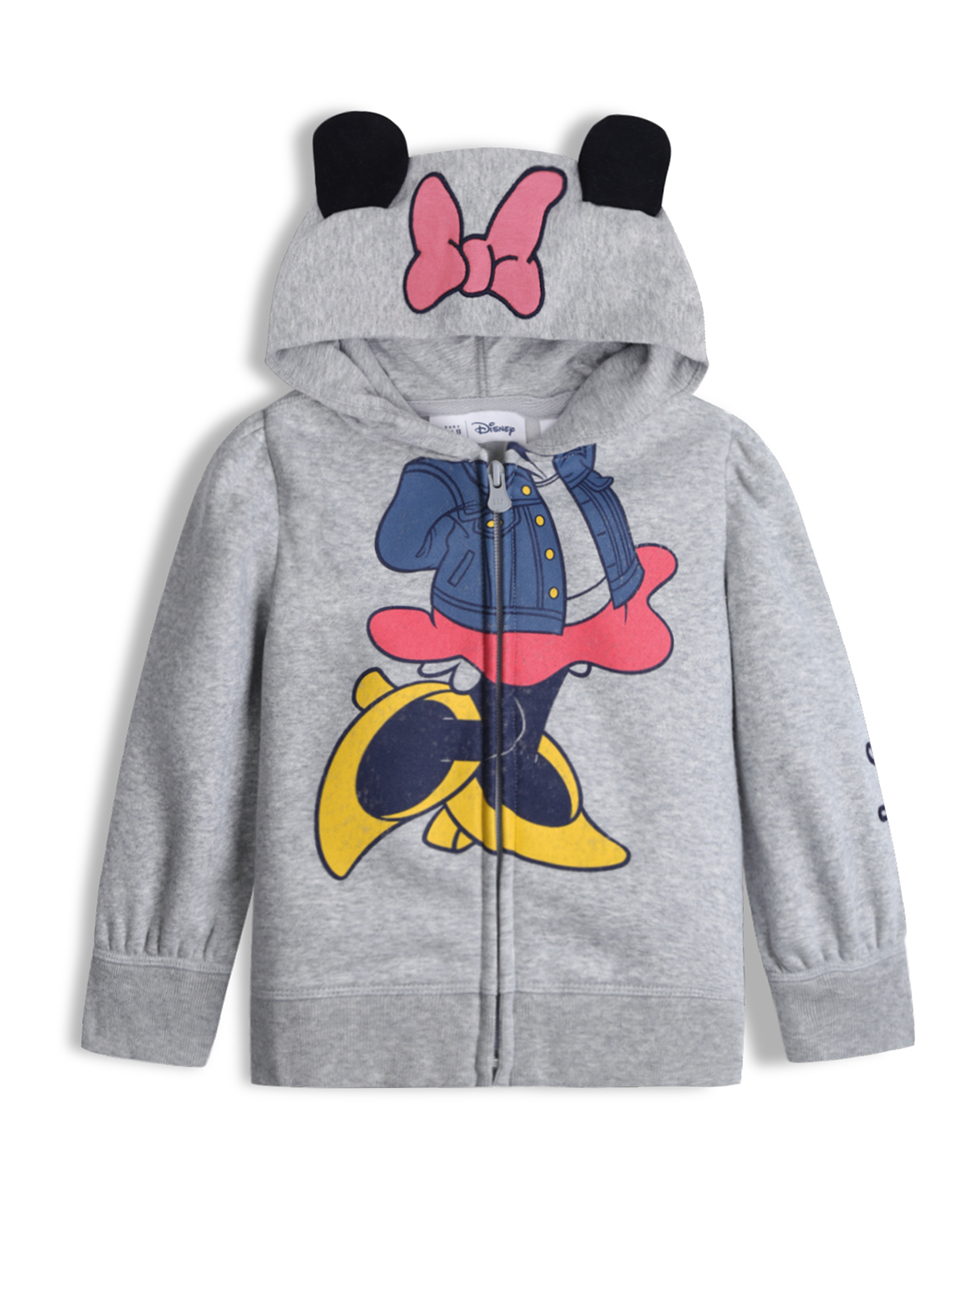 女幼童裝|Gap x Disney迪士尼聯名 米妮連帽外套-米妮老鼠圖案